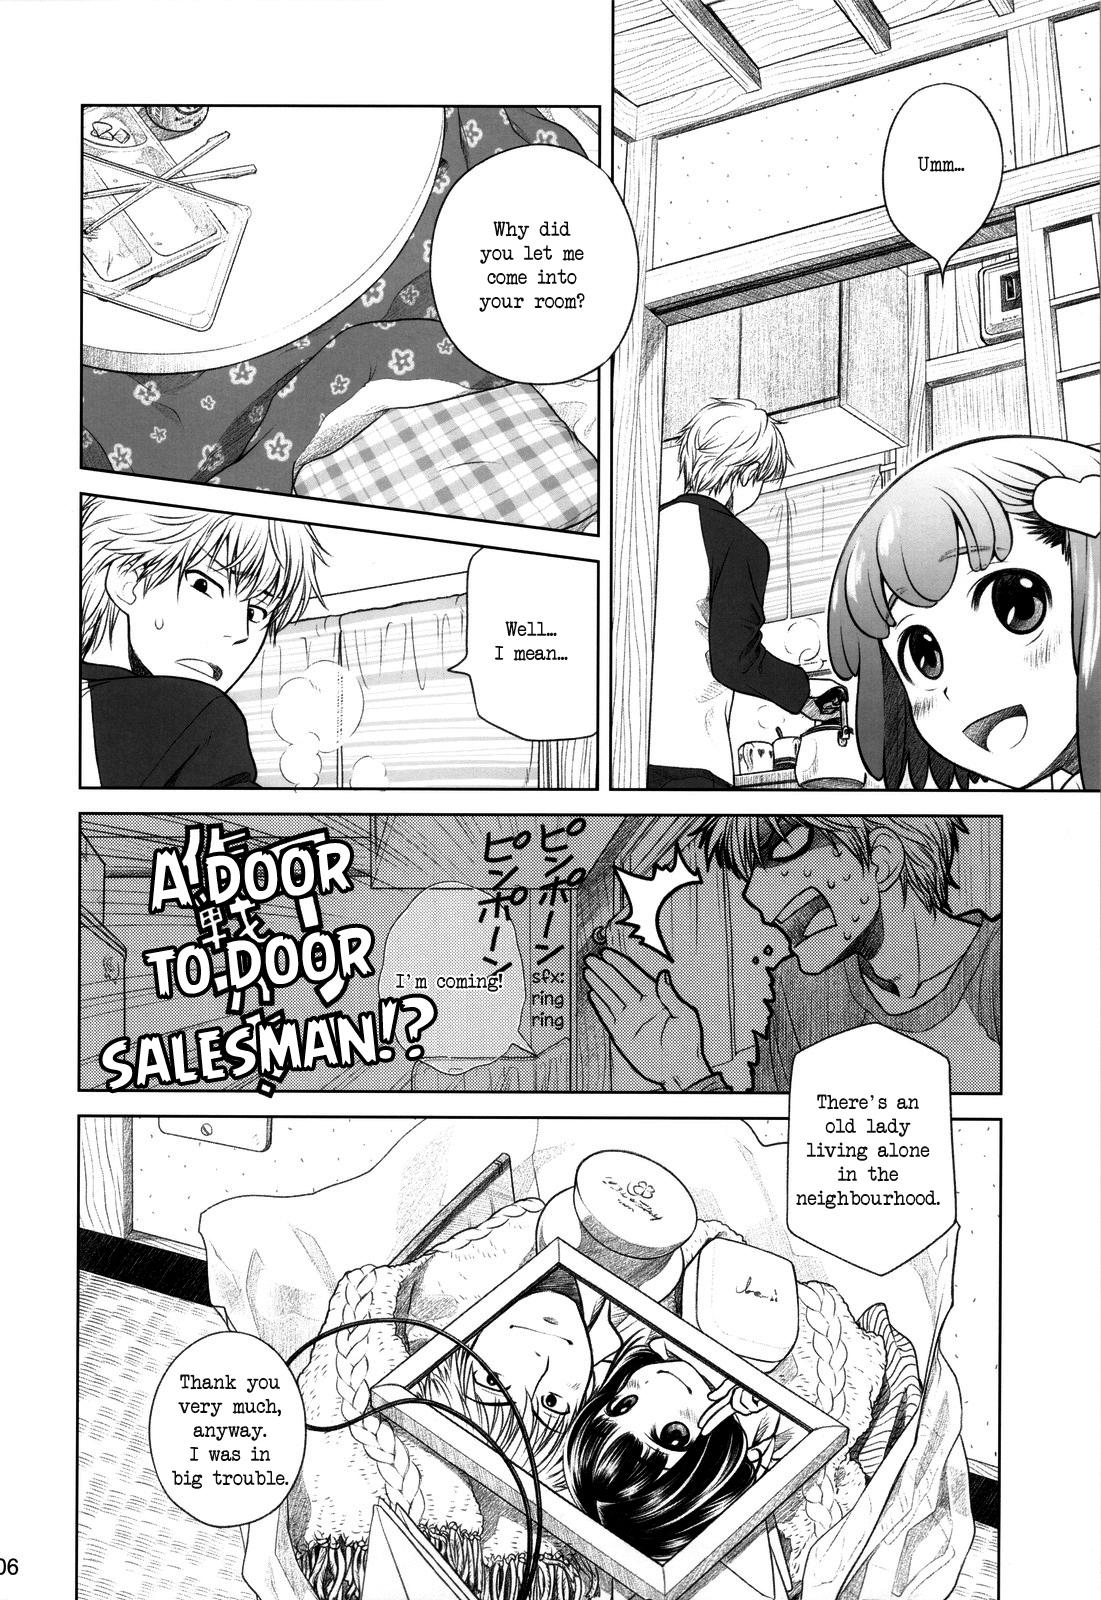 Penis Sucking Sorako no Tabi 4 - Kanata no Tabi Small - Page 5